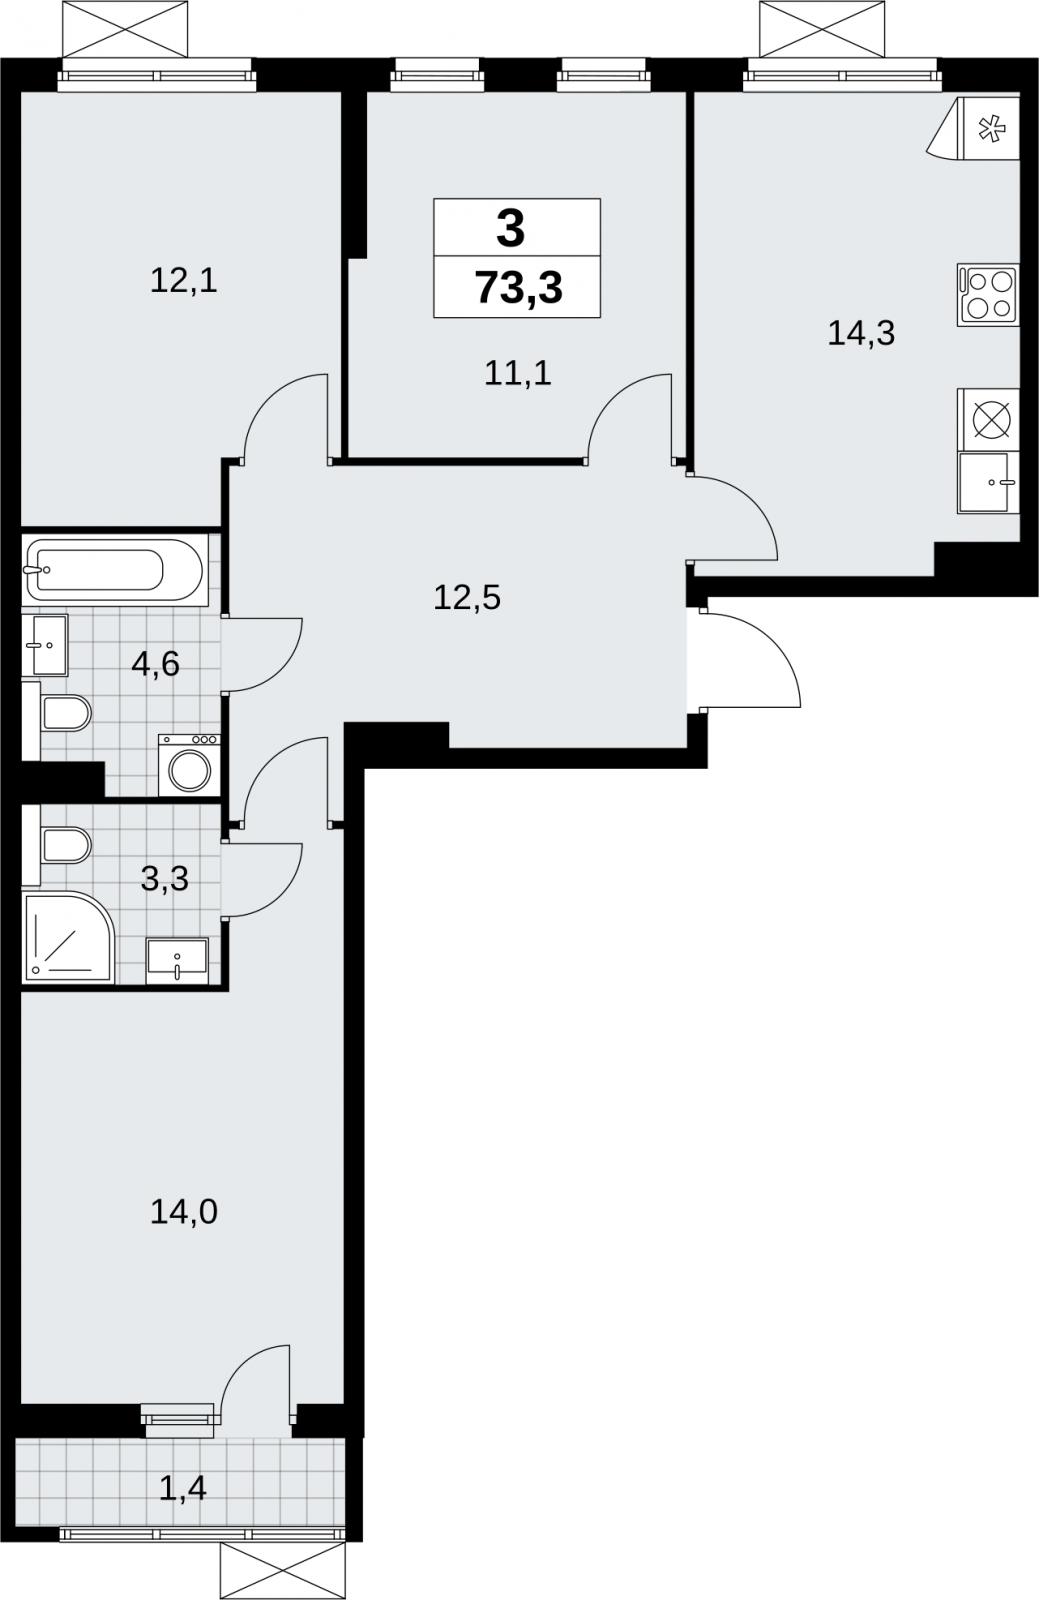 Продается трехкомнатная квартира в новом жилом комплексе, у метро